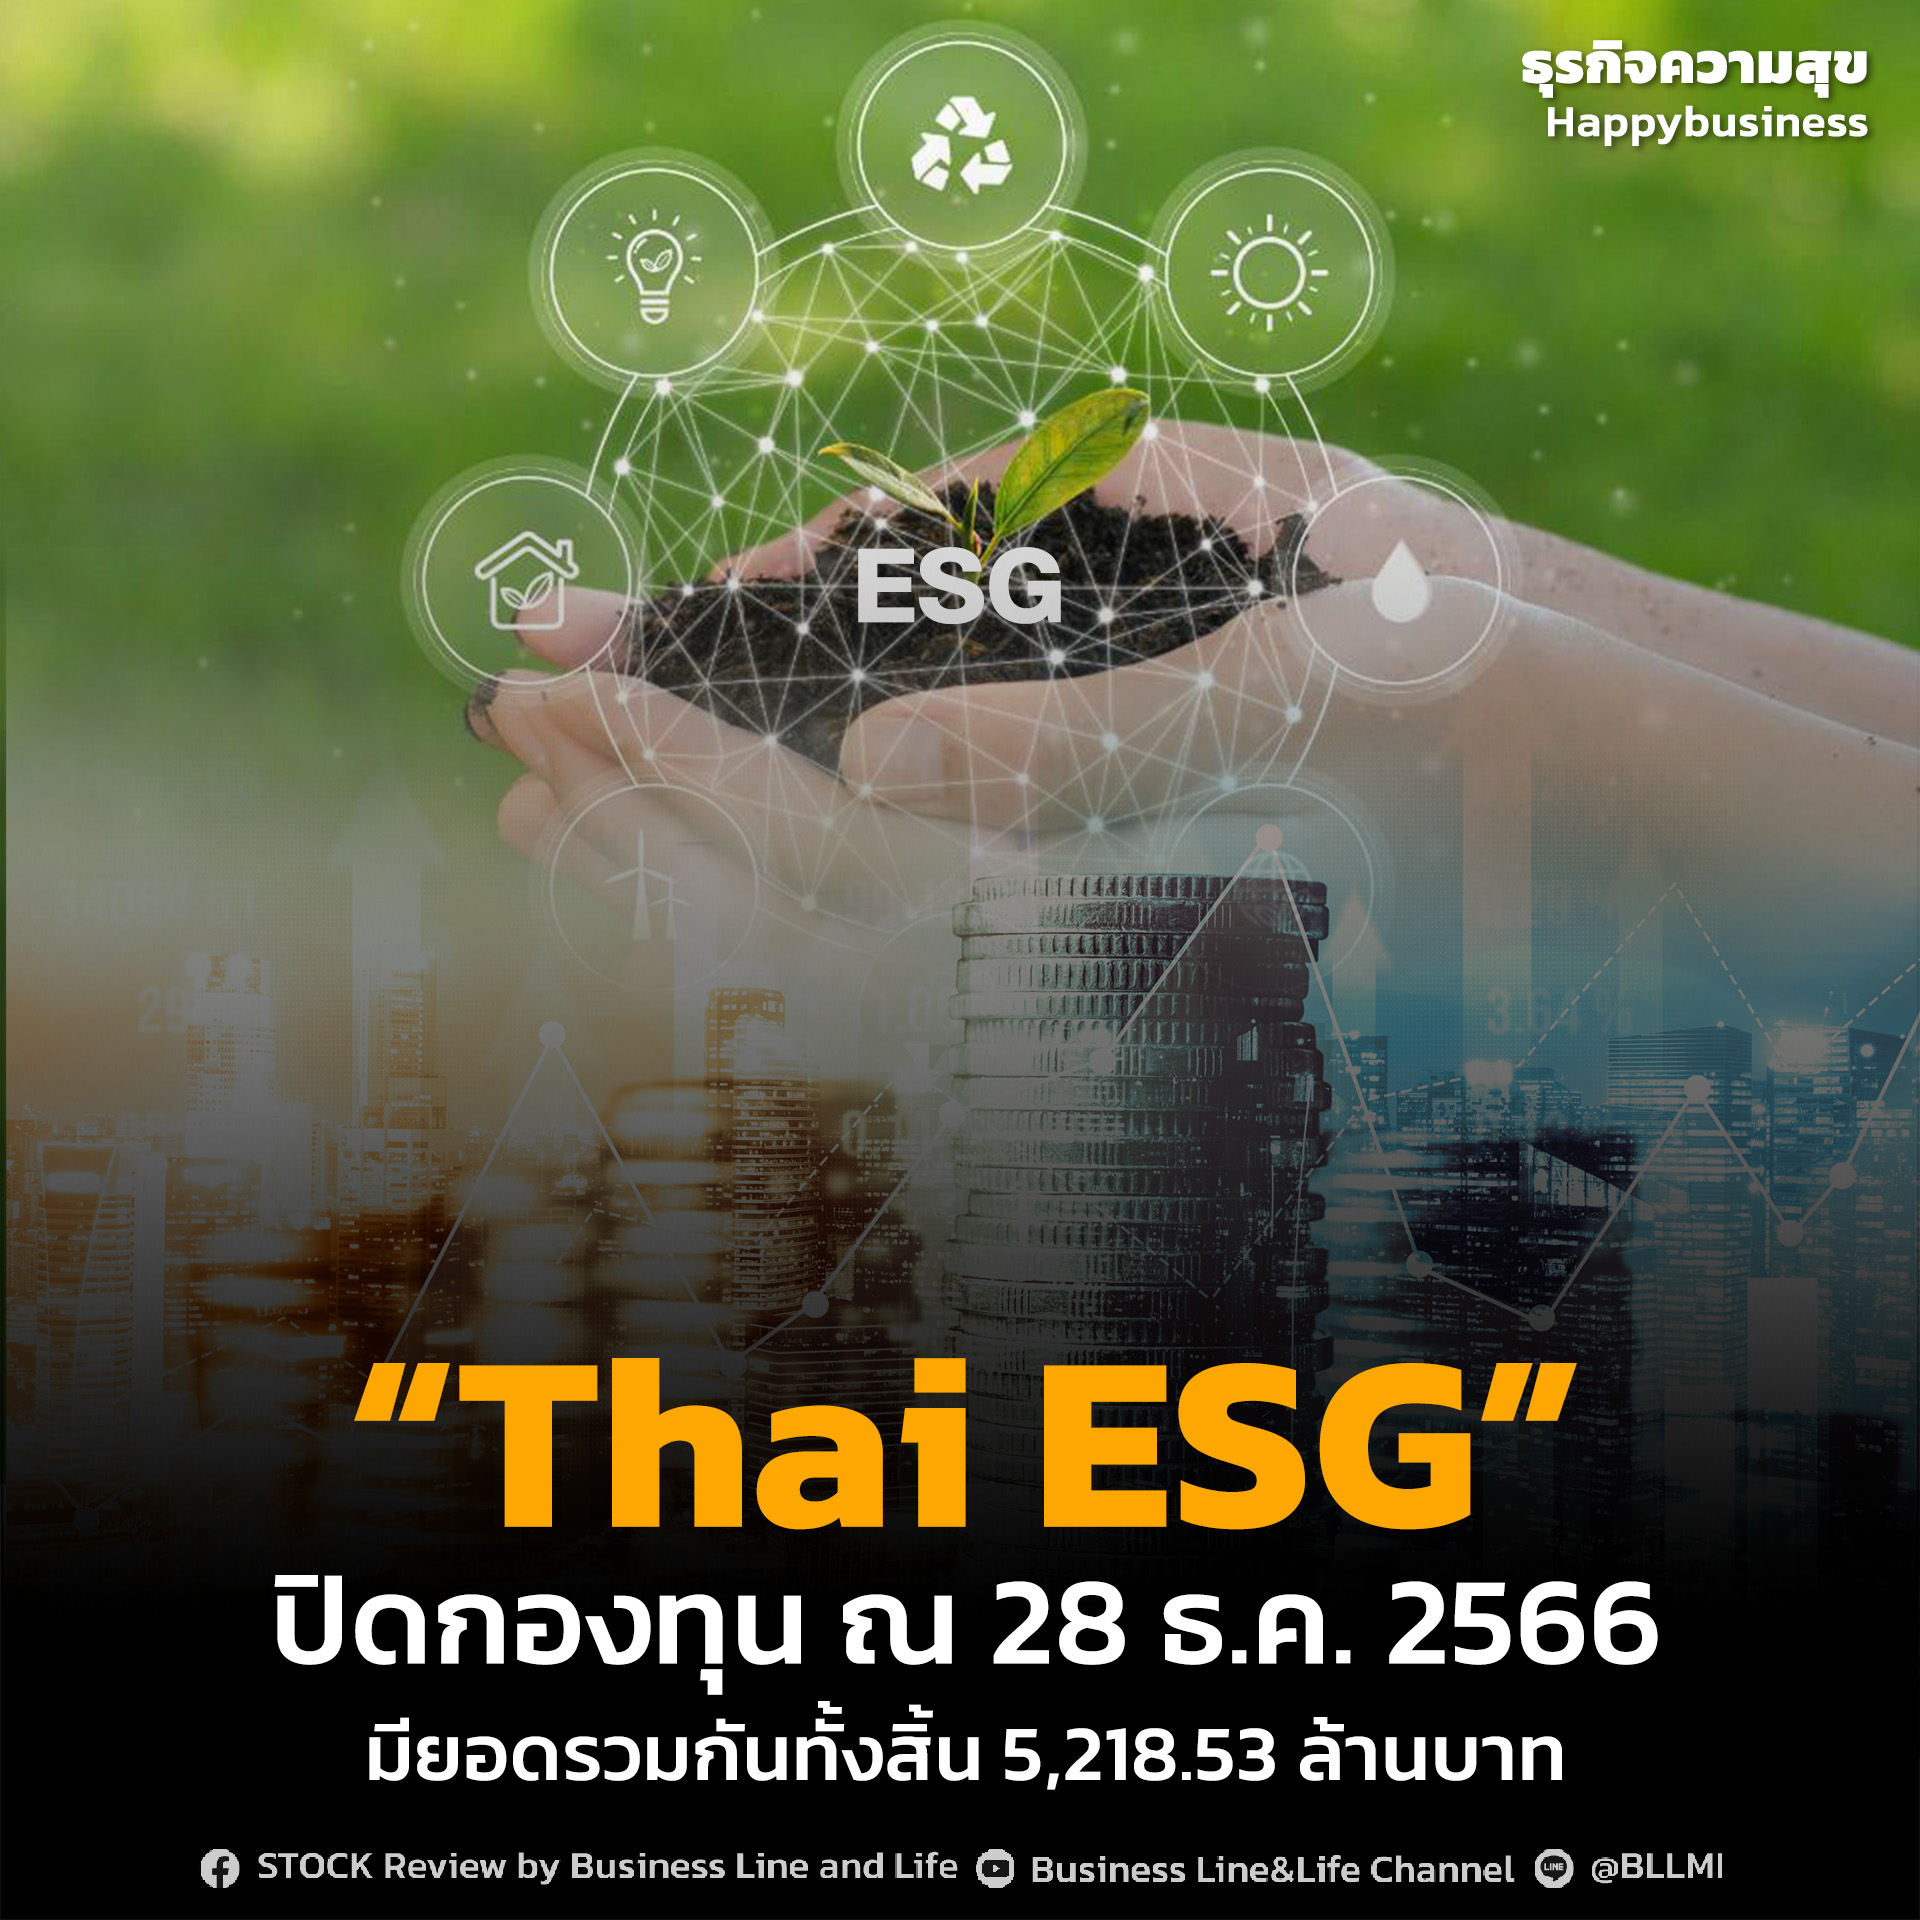 “Thai ESG” ปิดกองทุน ณ 28 ธ.ค. 2566มียอดรวมกันทั้งสิ้น 5,218.53 ล้านบาท